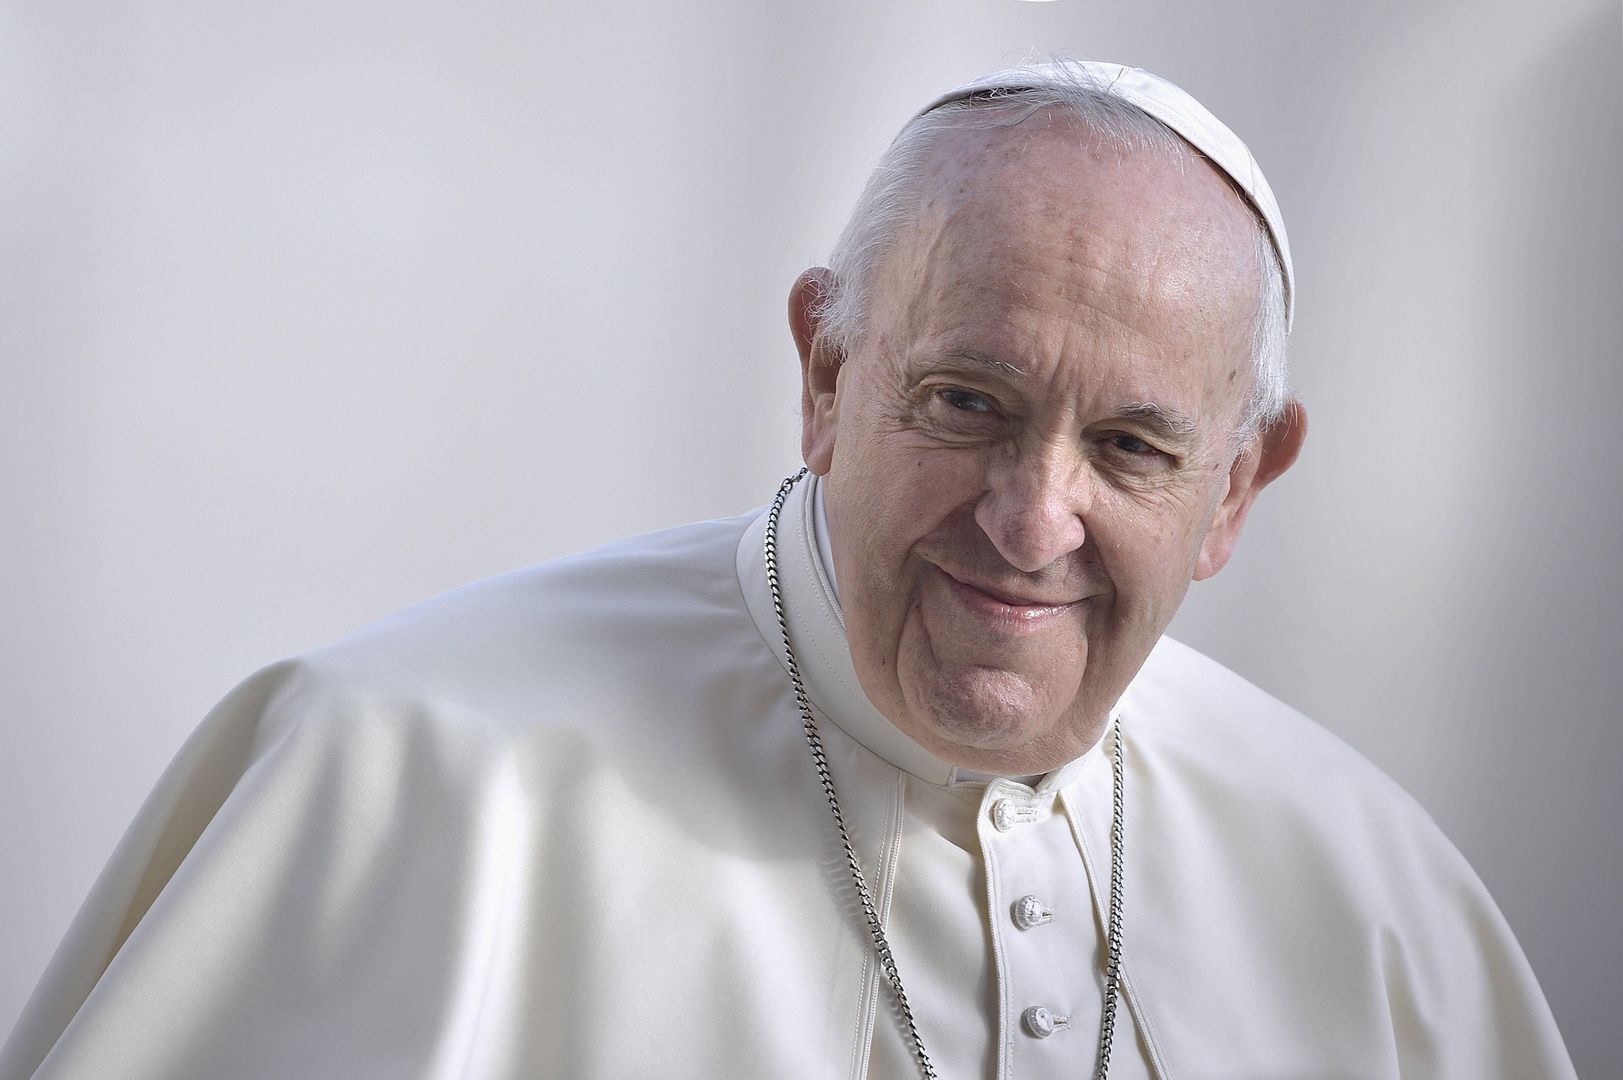 Papież Franciszek zaskoczył studentów: "Przepraszam, nie powinienem tego mówić"